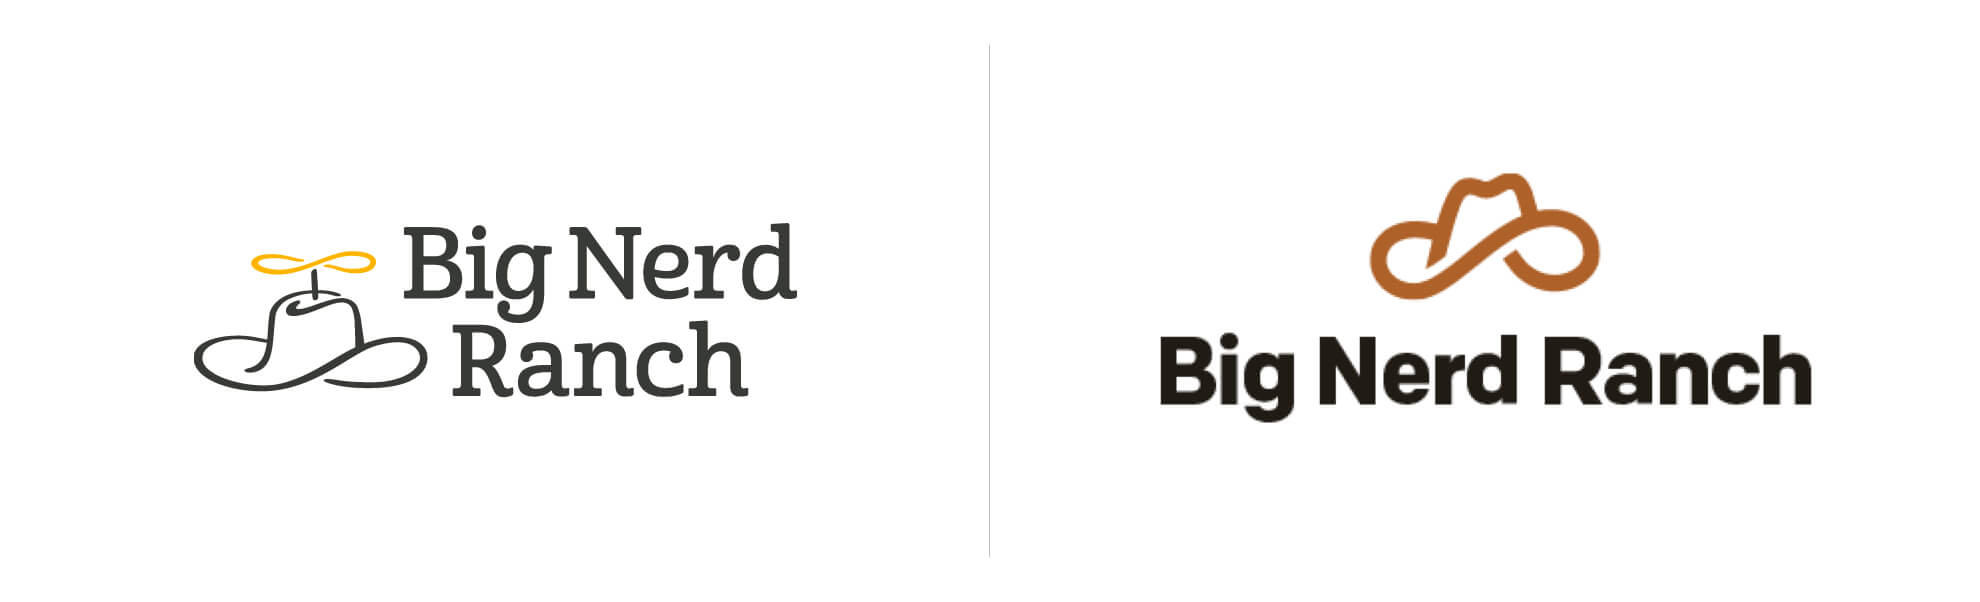 Big Nerd Ranch zmienia logo